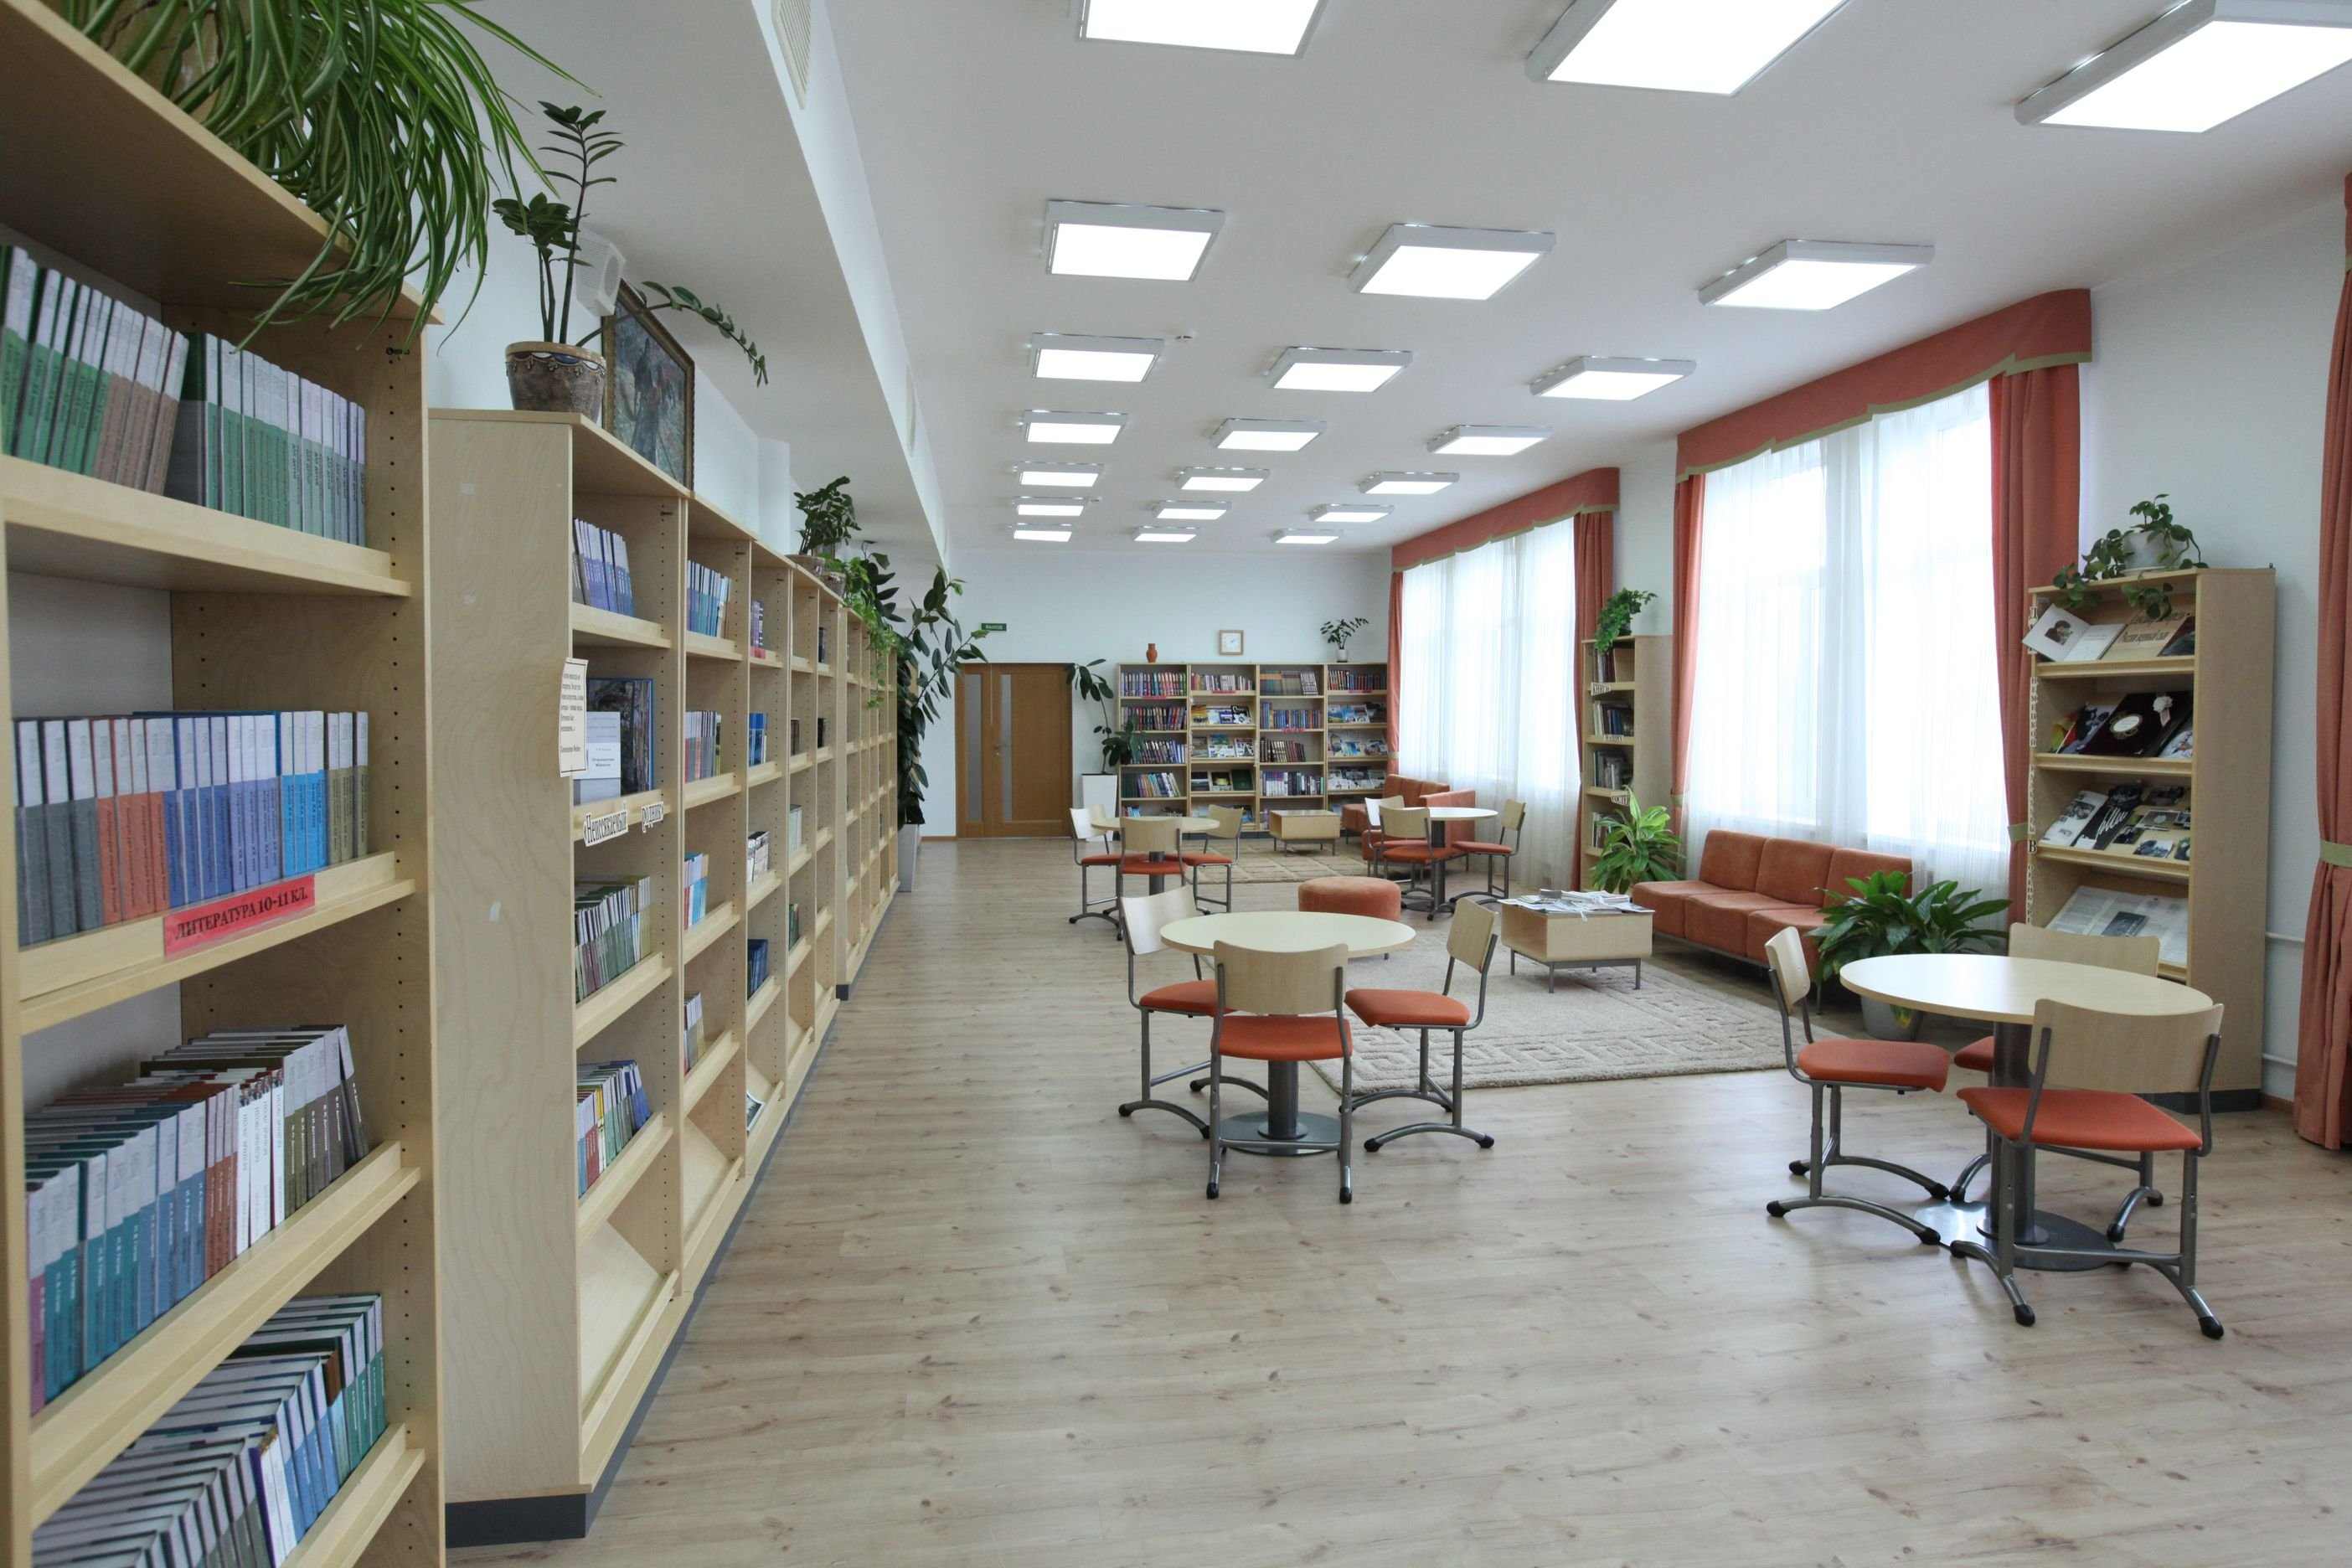 Библиотека образовательный центр